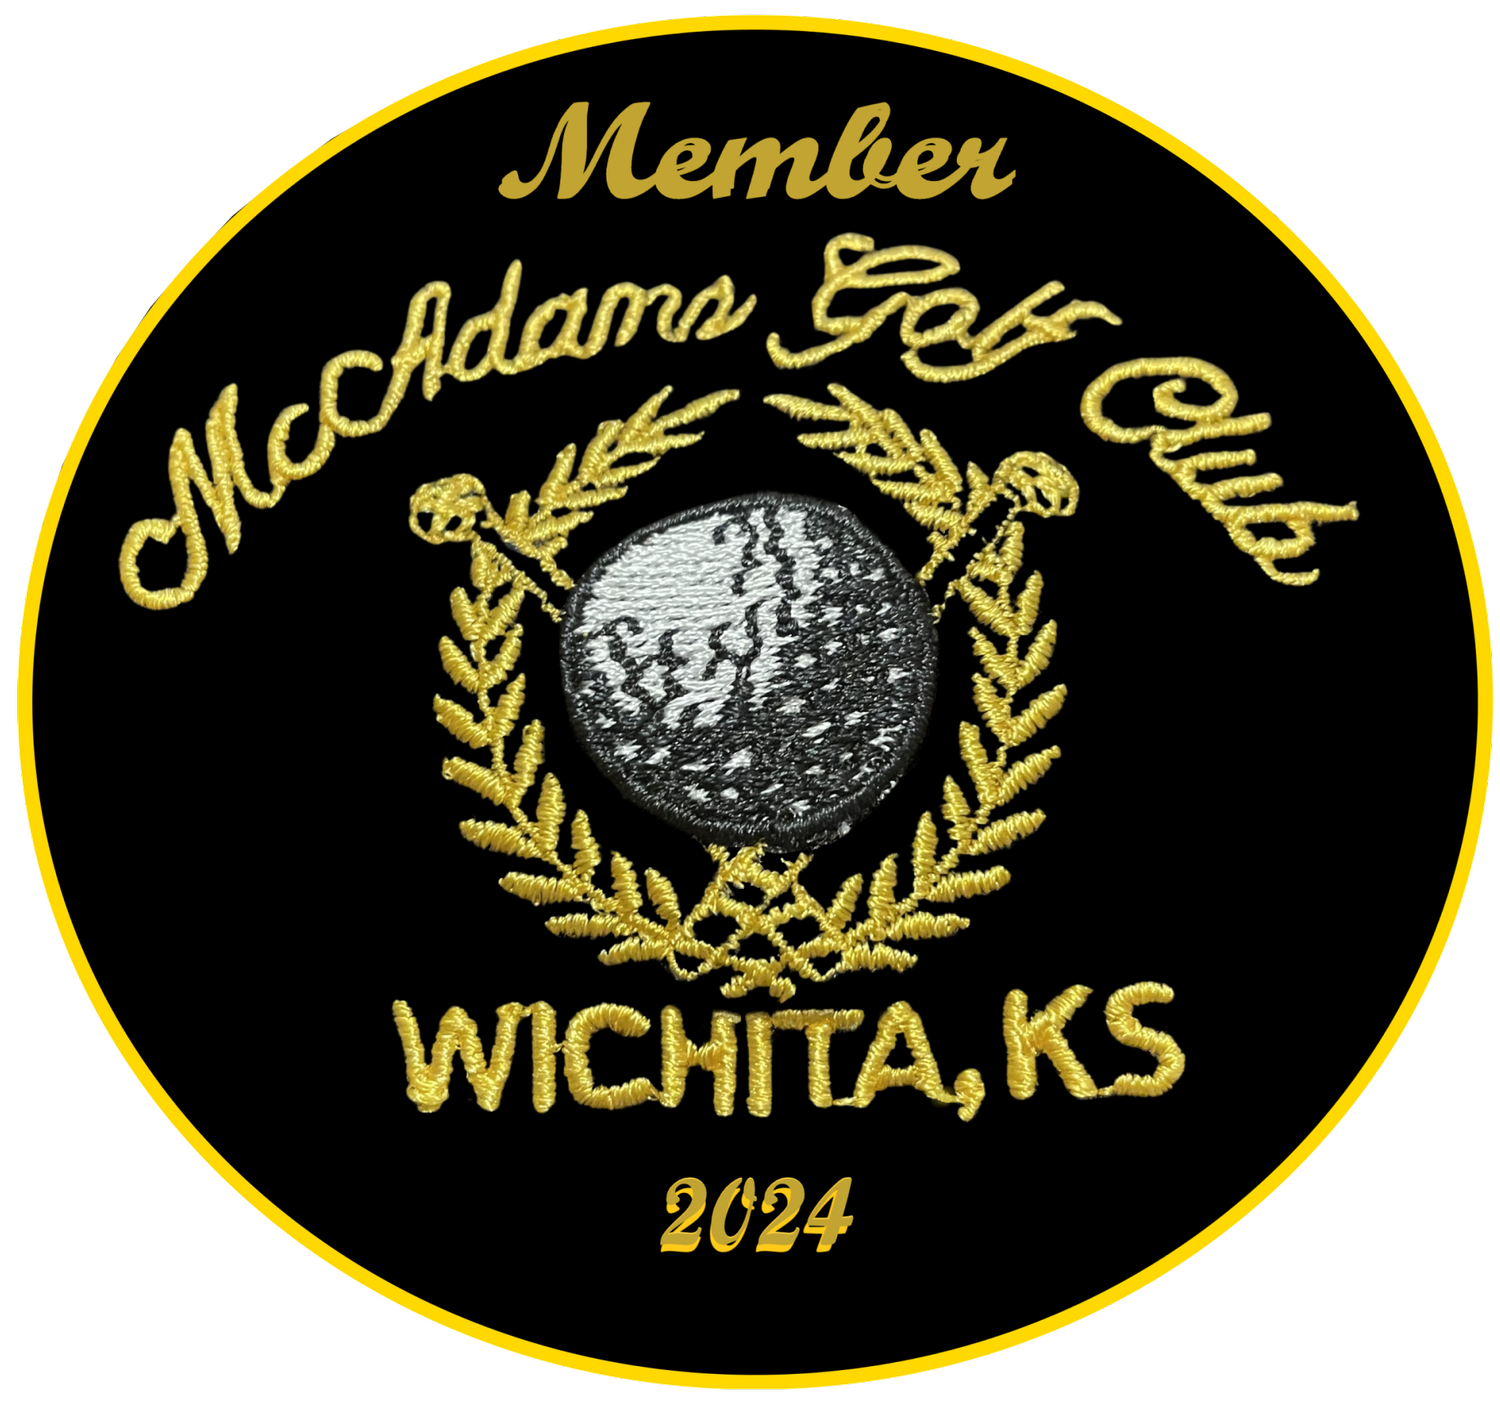 McAdams Golf Club